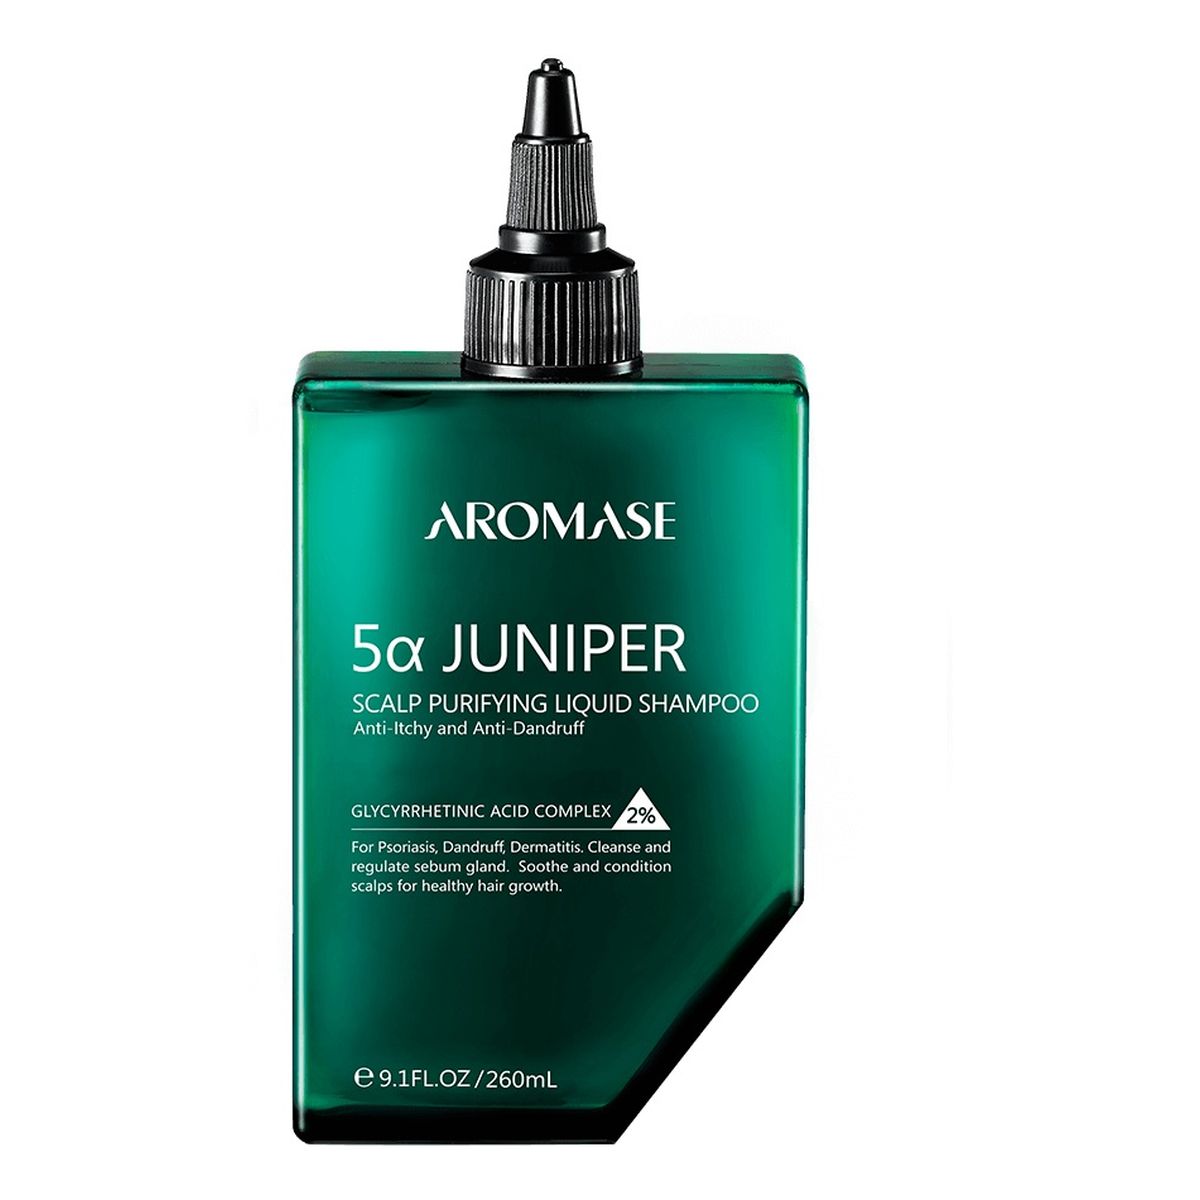 Aromase 5α Juniper Scalp Purifying Liquid Shampoo Szampon oczyszczający skórę głowy 260ml